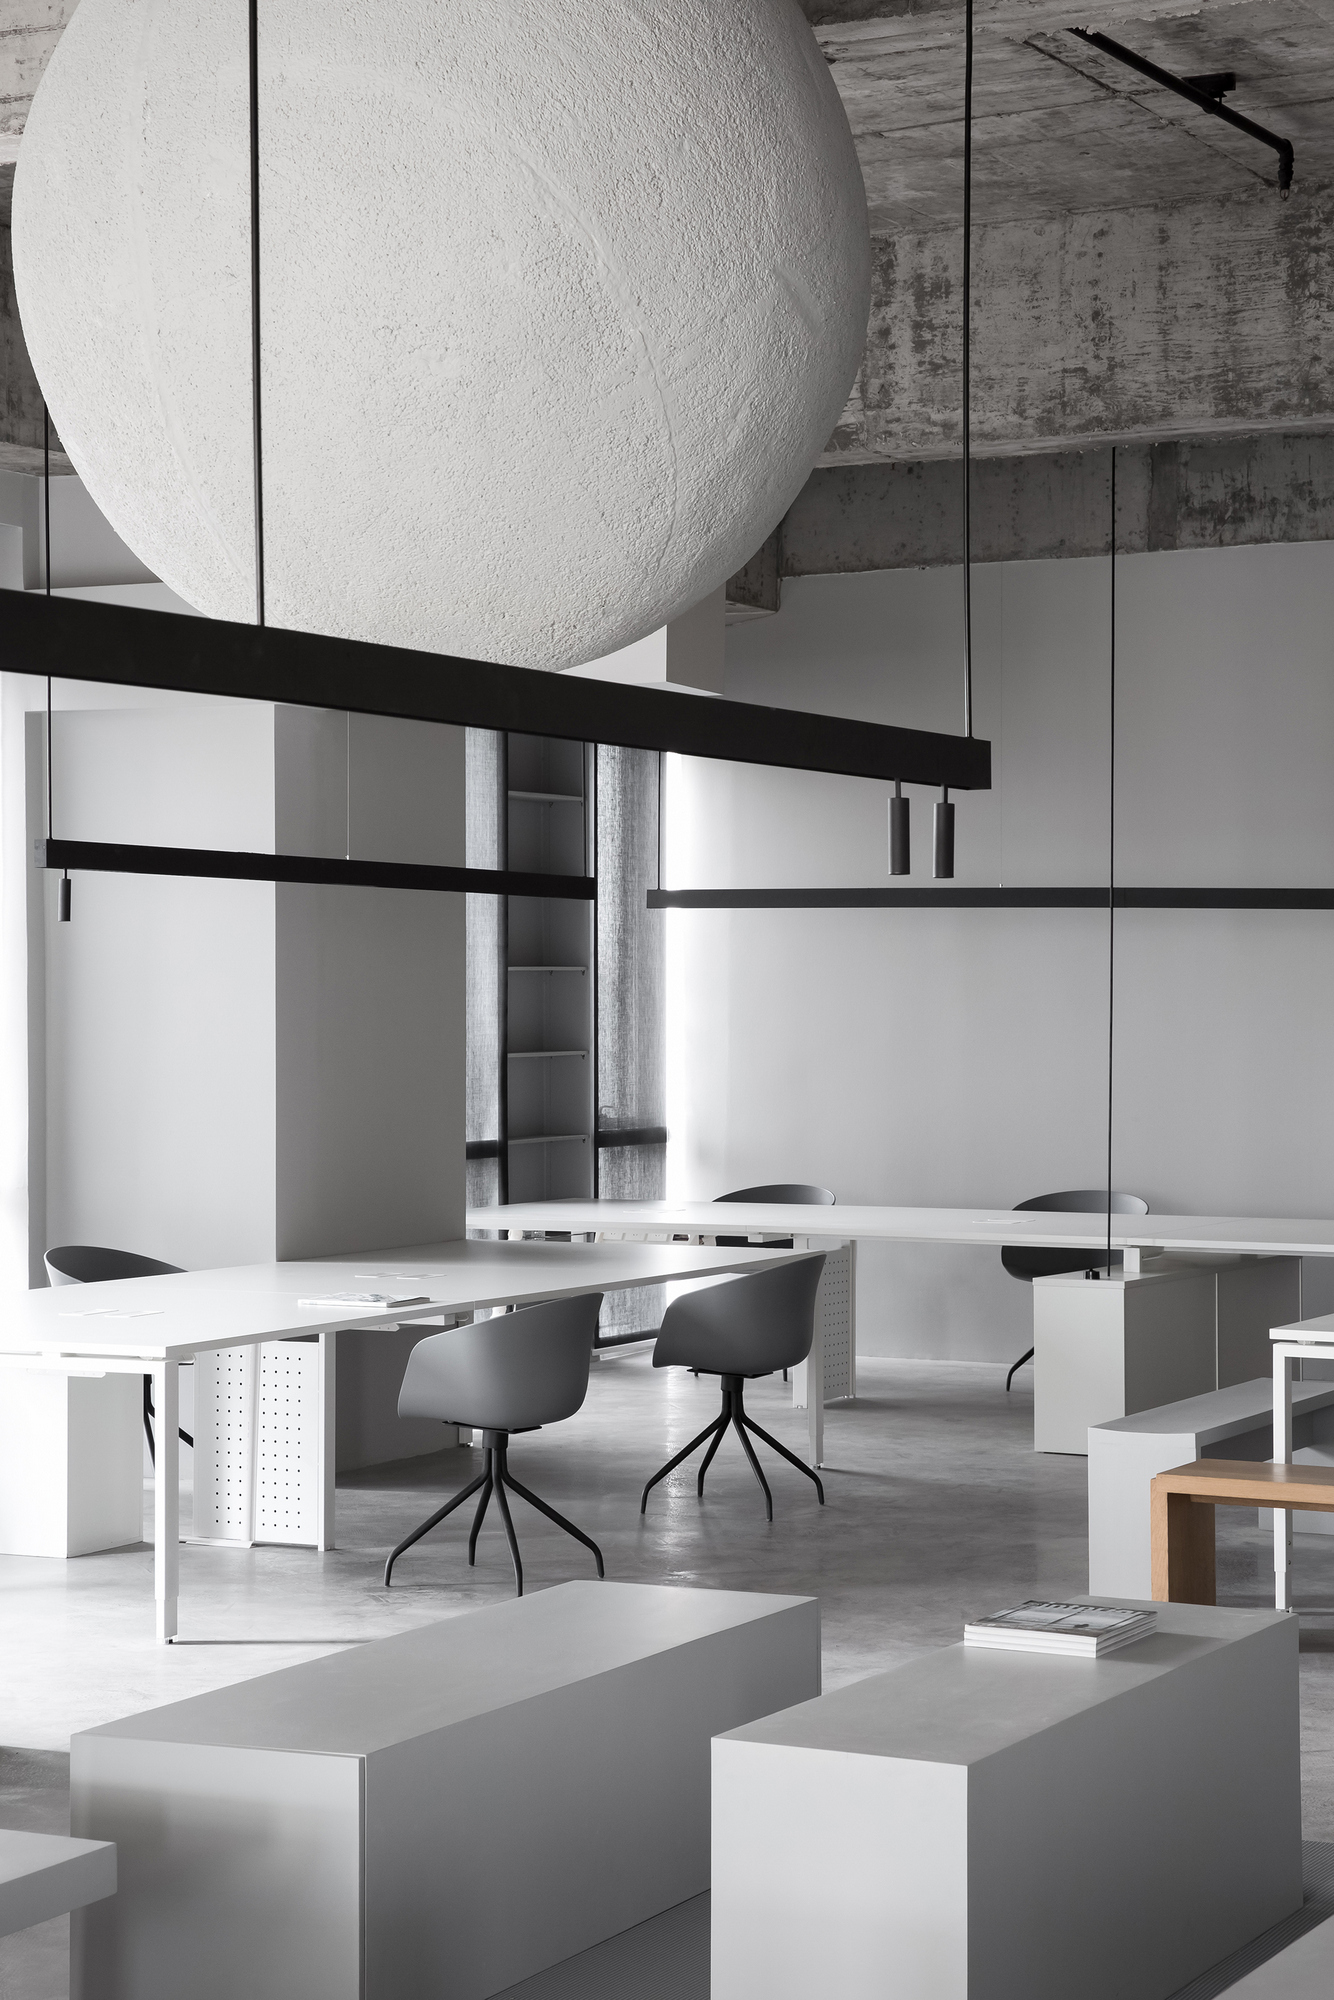 图片[5]|XZONE办公室-汕头|ART-Arrakis | 建筑室内设计的创新与灵感